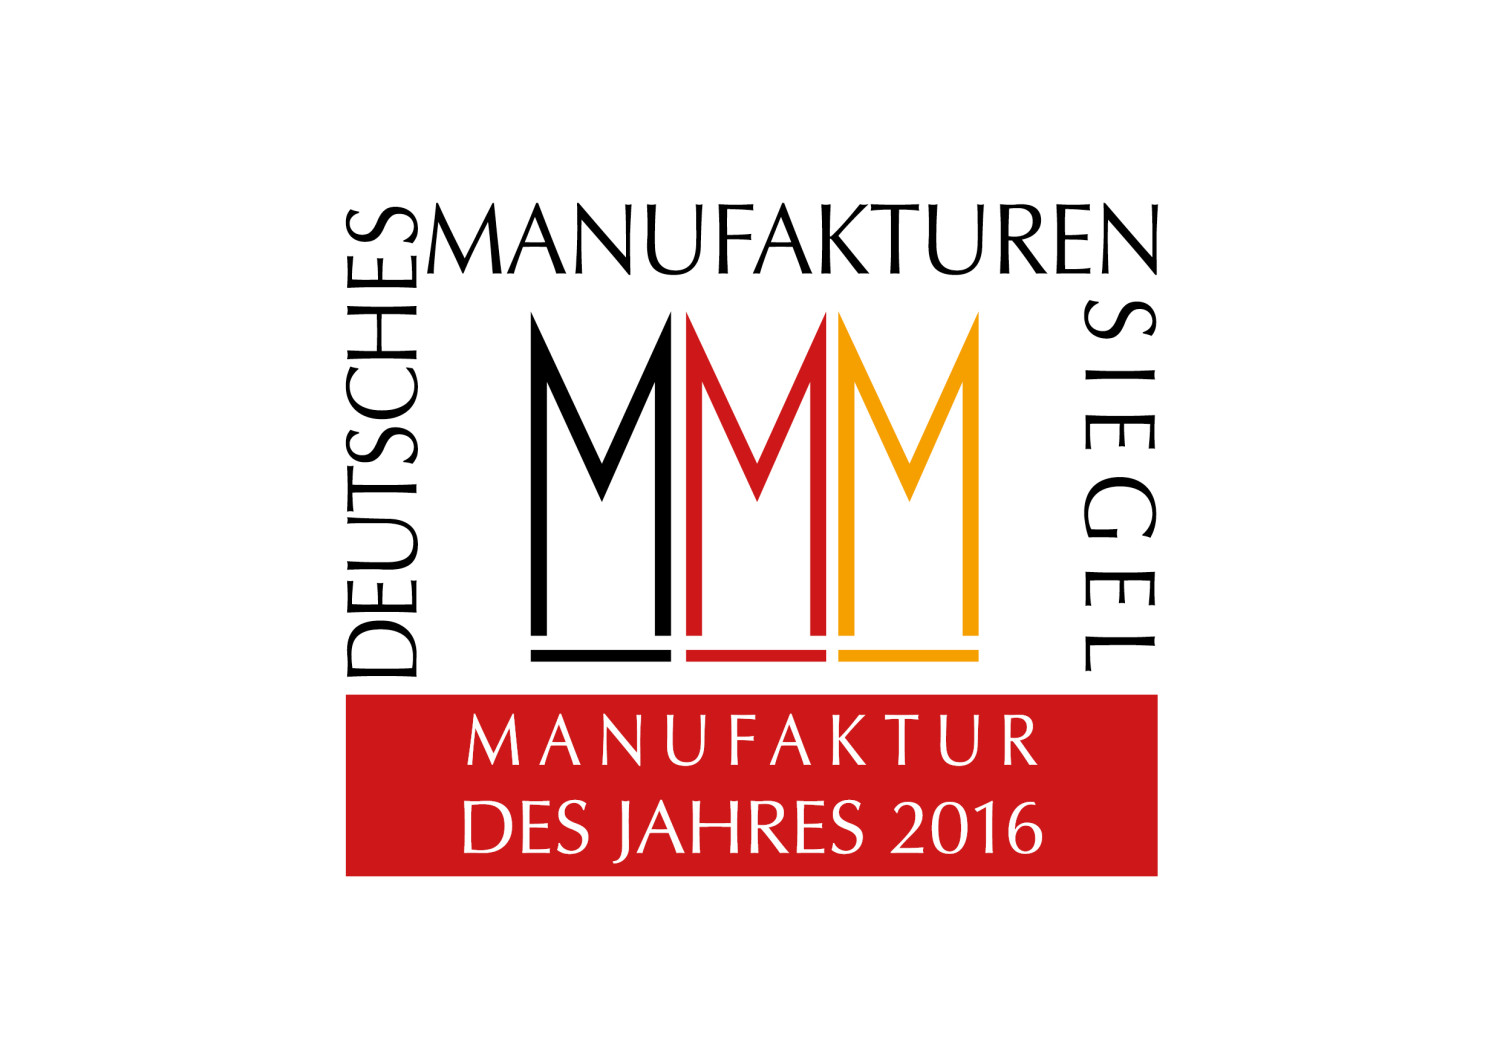 Manufaktur des Jahres 2016 - Siegel des Verbandes Deutsche Manufakturen e. V., Bremen (Entwurf und Reinzeichnung: Zembski & Co.)